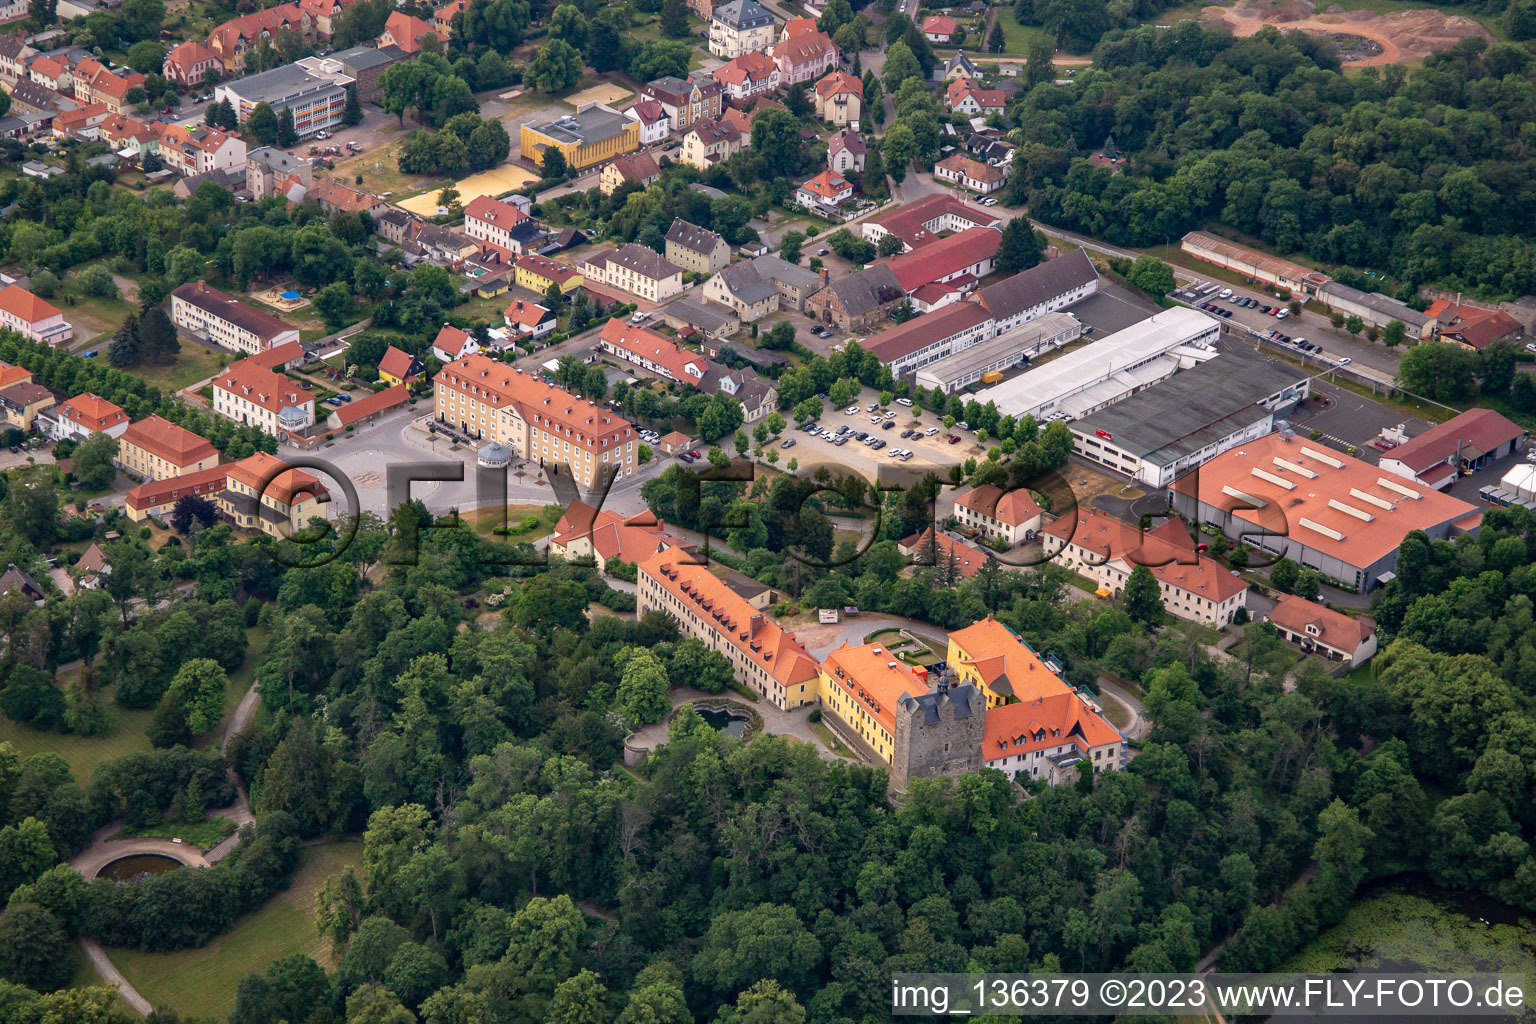 Vue aérienne de Château et parc du château Ballenstedt eV à Ballenstedt dans le département Saxe-Anhalt, Allemagne